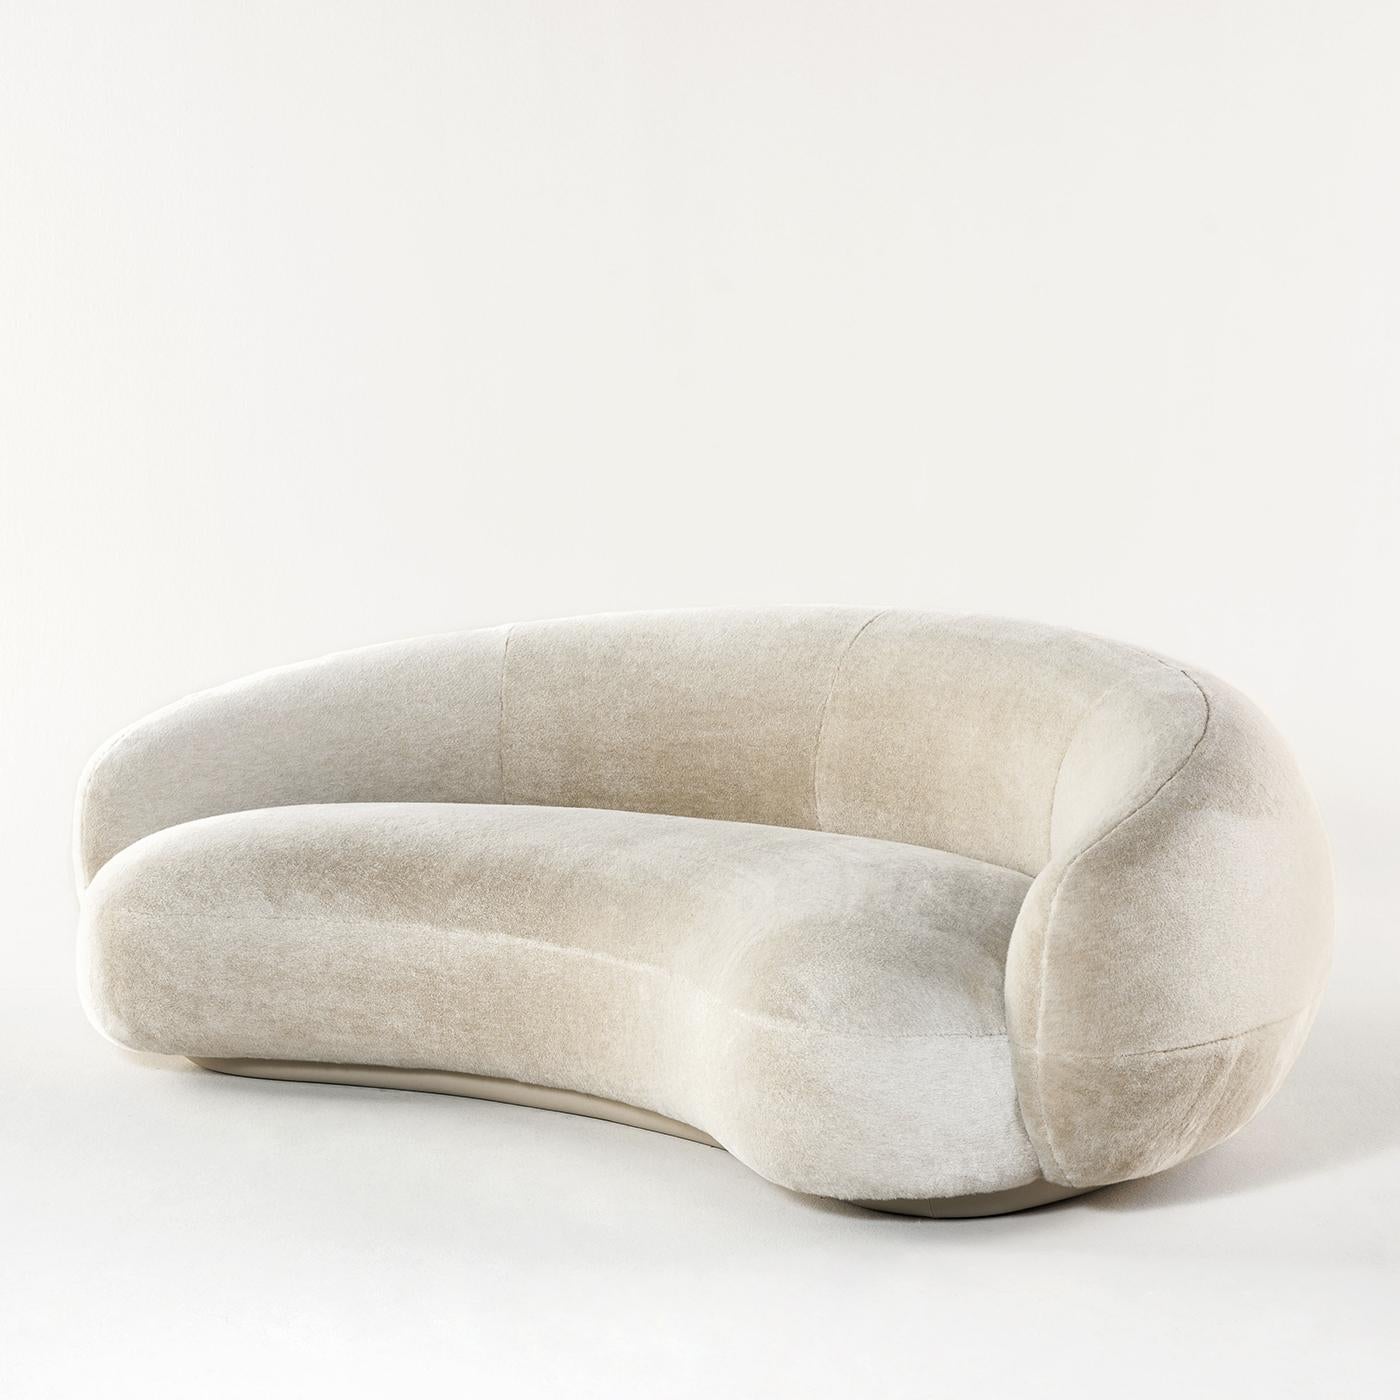 Als Teil der von Jason Wagell entworfenen Julep-Kollektion besticht dieses Sofa durch seine raffinierte Ausstrahlung:: die eine moderne Silhouette mit einem romantischen und femininen Flair verbindet. Die großzügige Sitzfläche mit ihrem 42 cm hohen